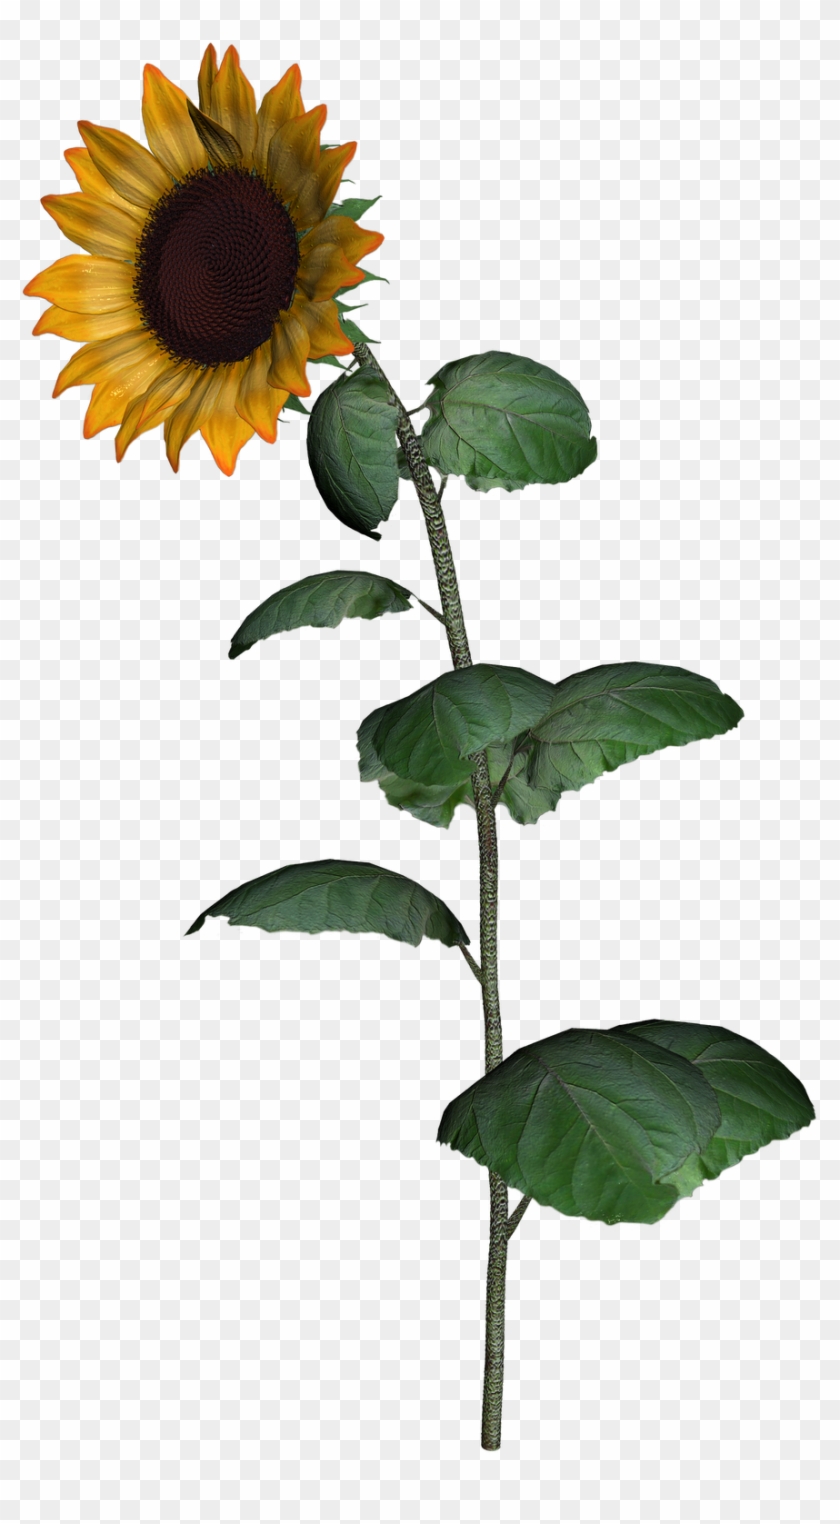 Common Sunflower Sunflower Seed Clip Art - Common Sunflower Sunflower Seed Clip Art #741716